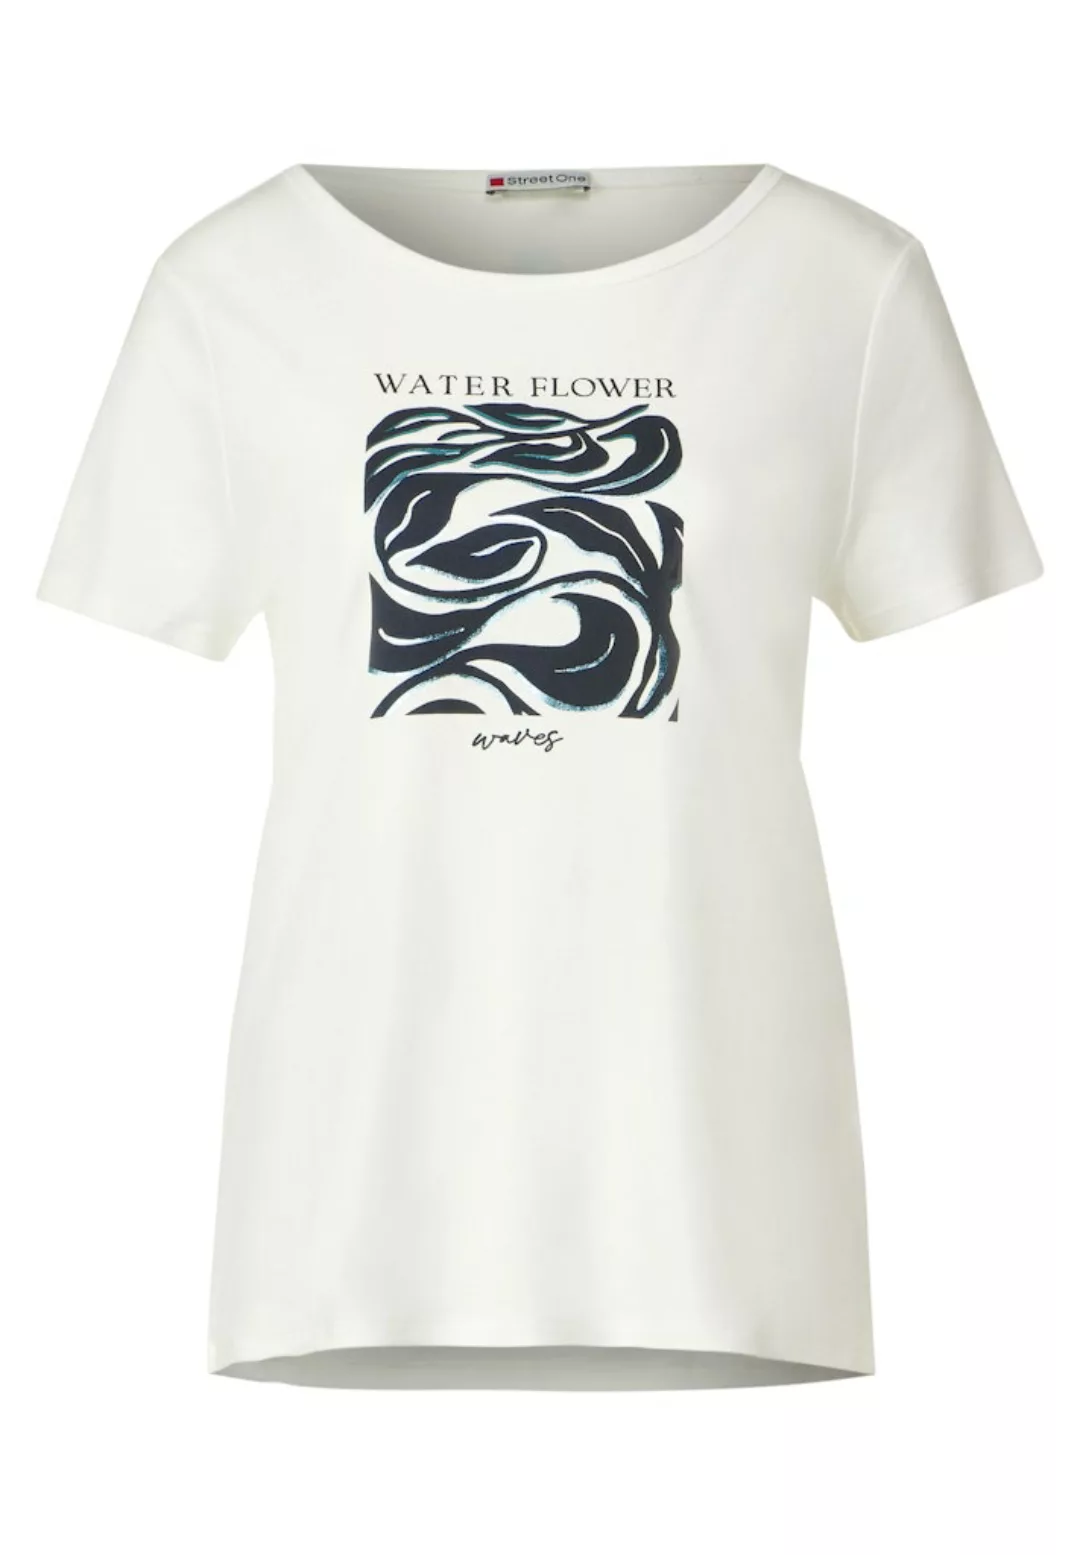 STREET ONE T-Shirt Interlock Part Print Shirt mit Glitzeraufdruck günstig online kaufen